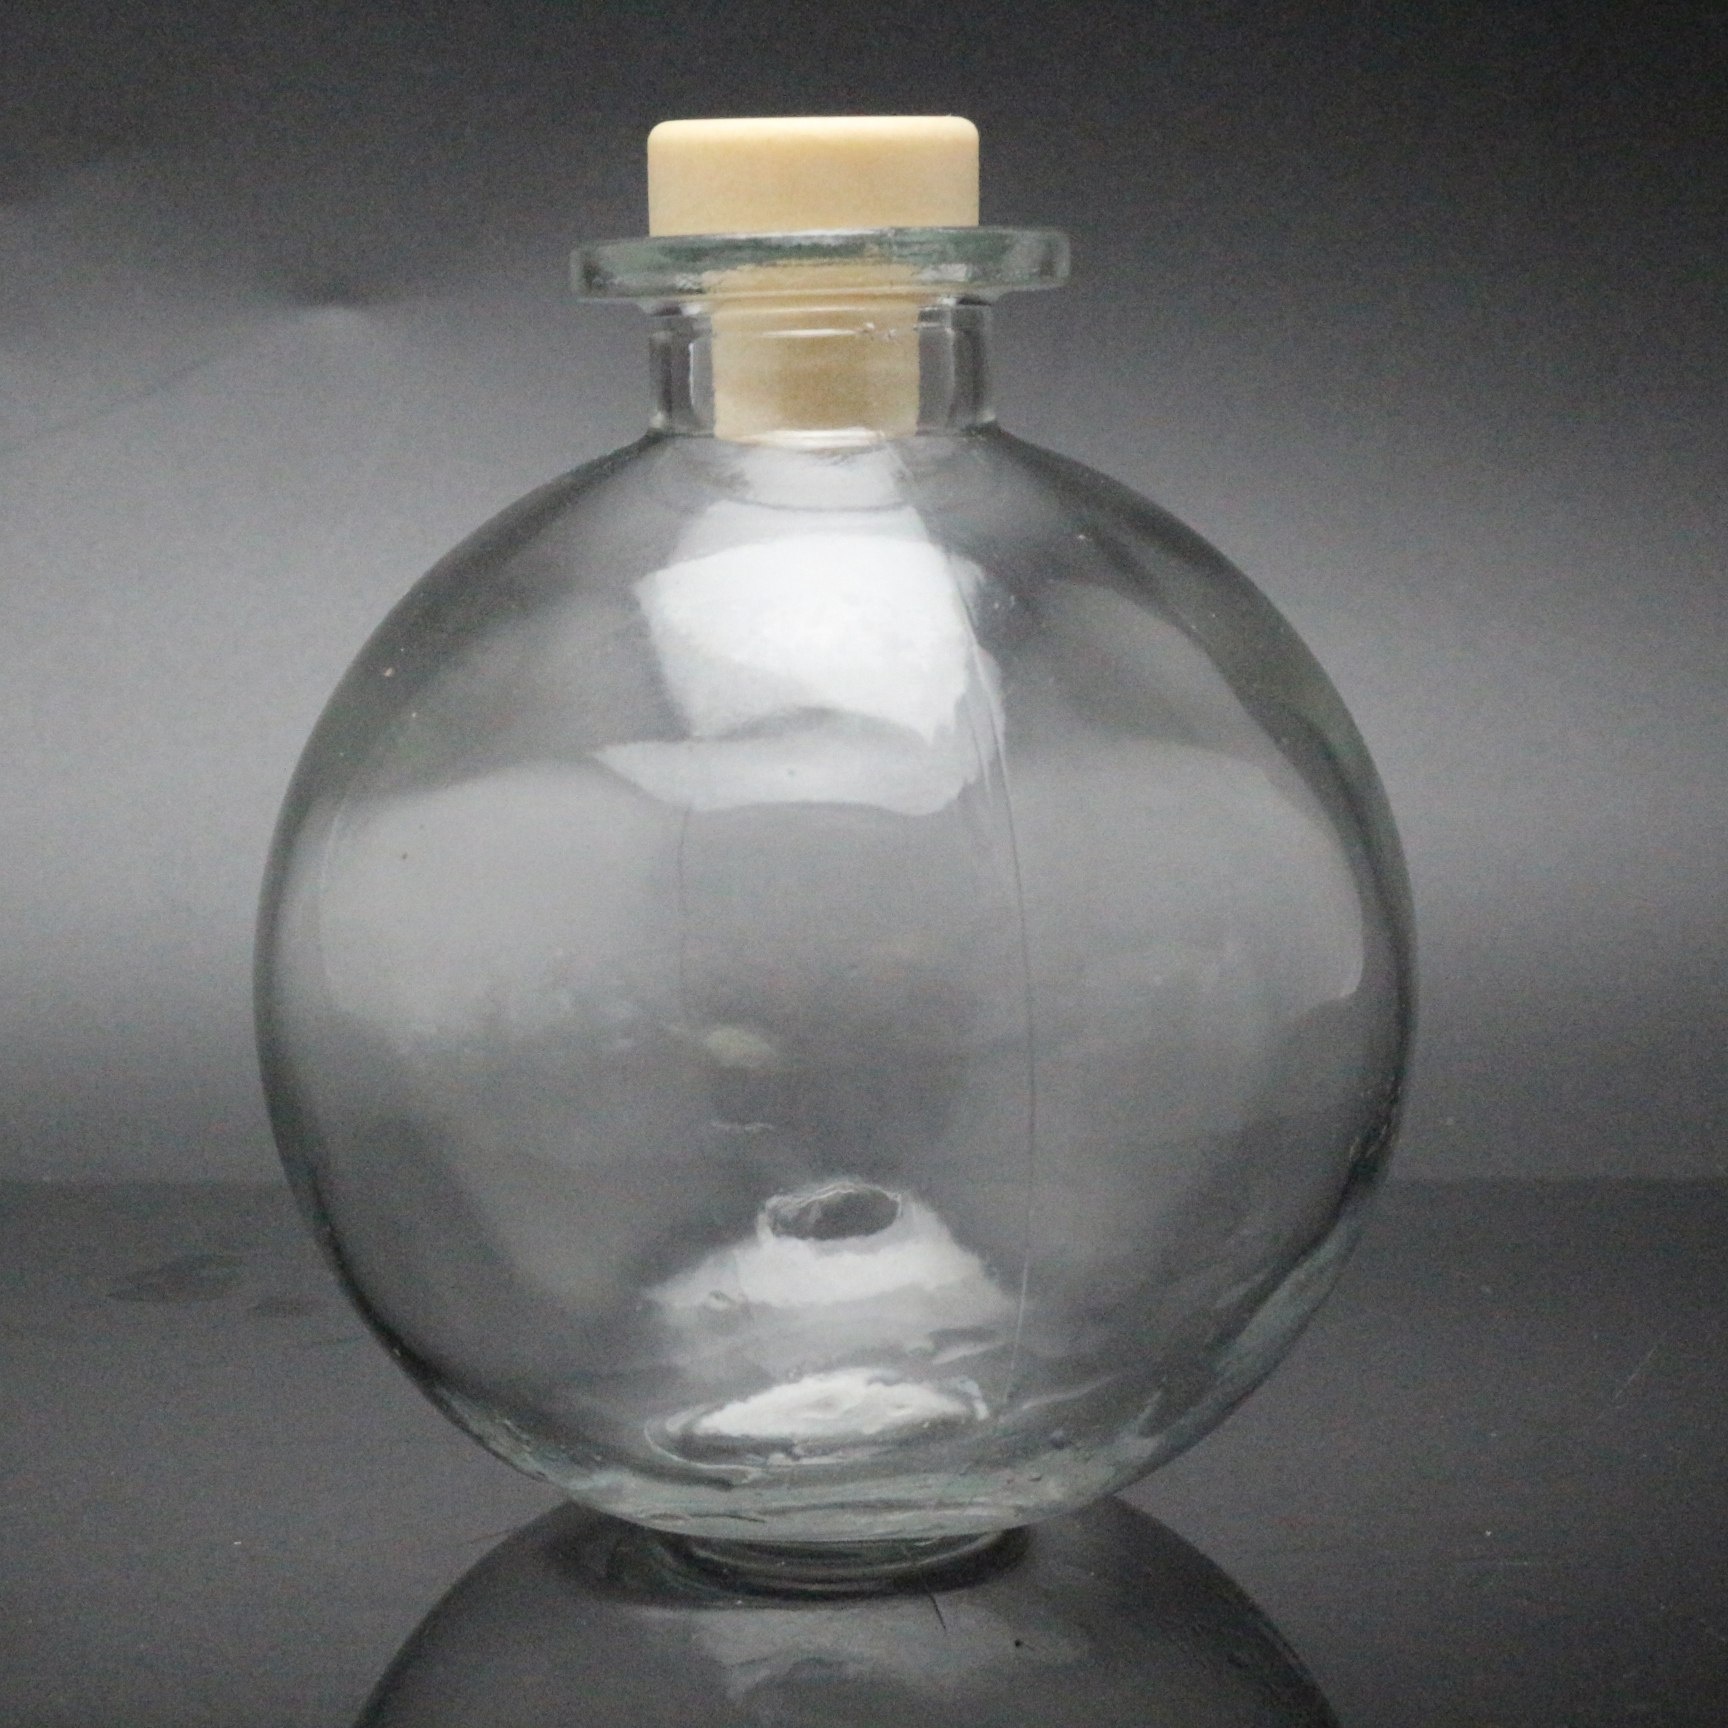 Hosley Glass Diffuser Flaske med Reeds Diffuser Oil 100ml flaske